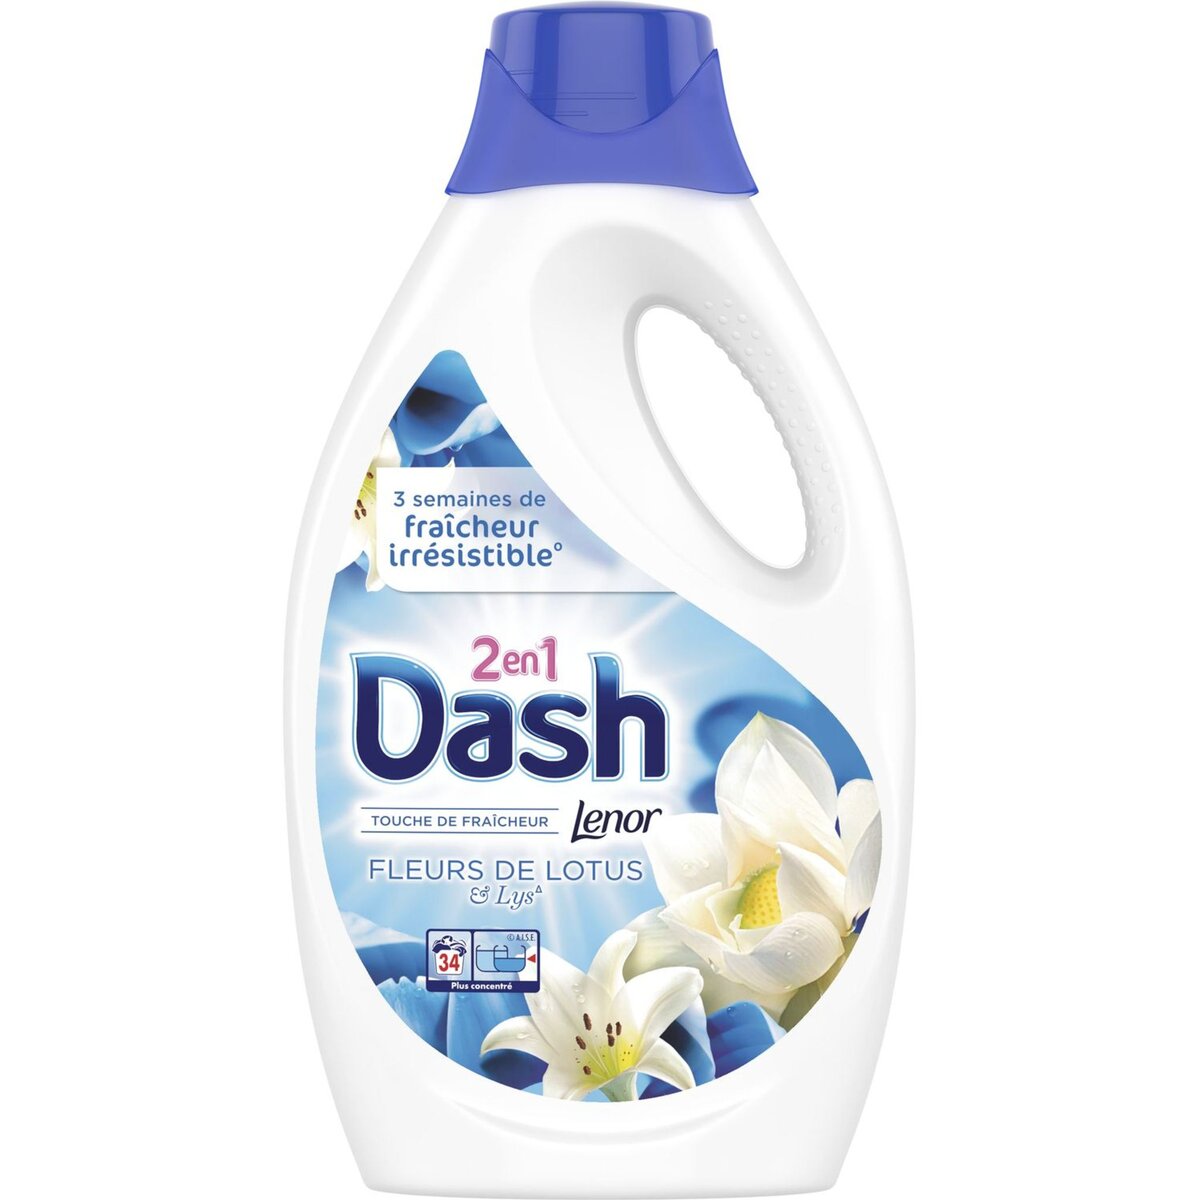 DASH Dash lessive diluée lotus 34 lavages -1,87l